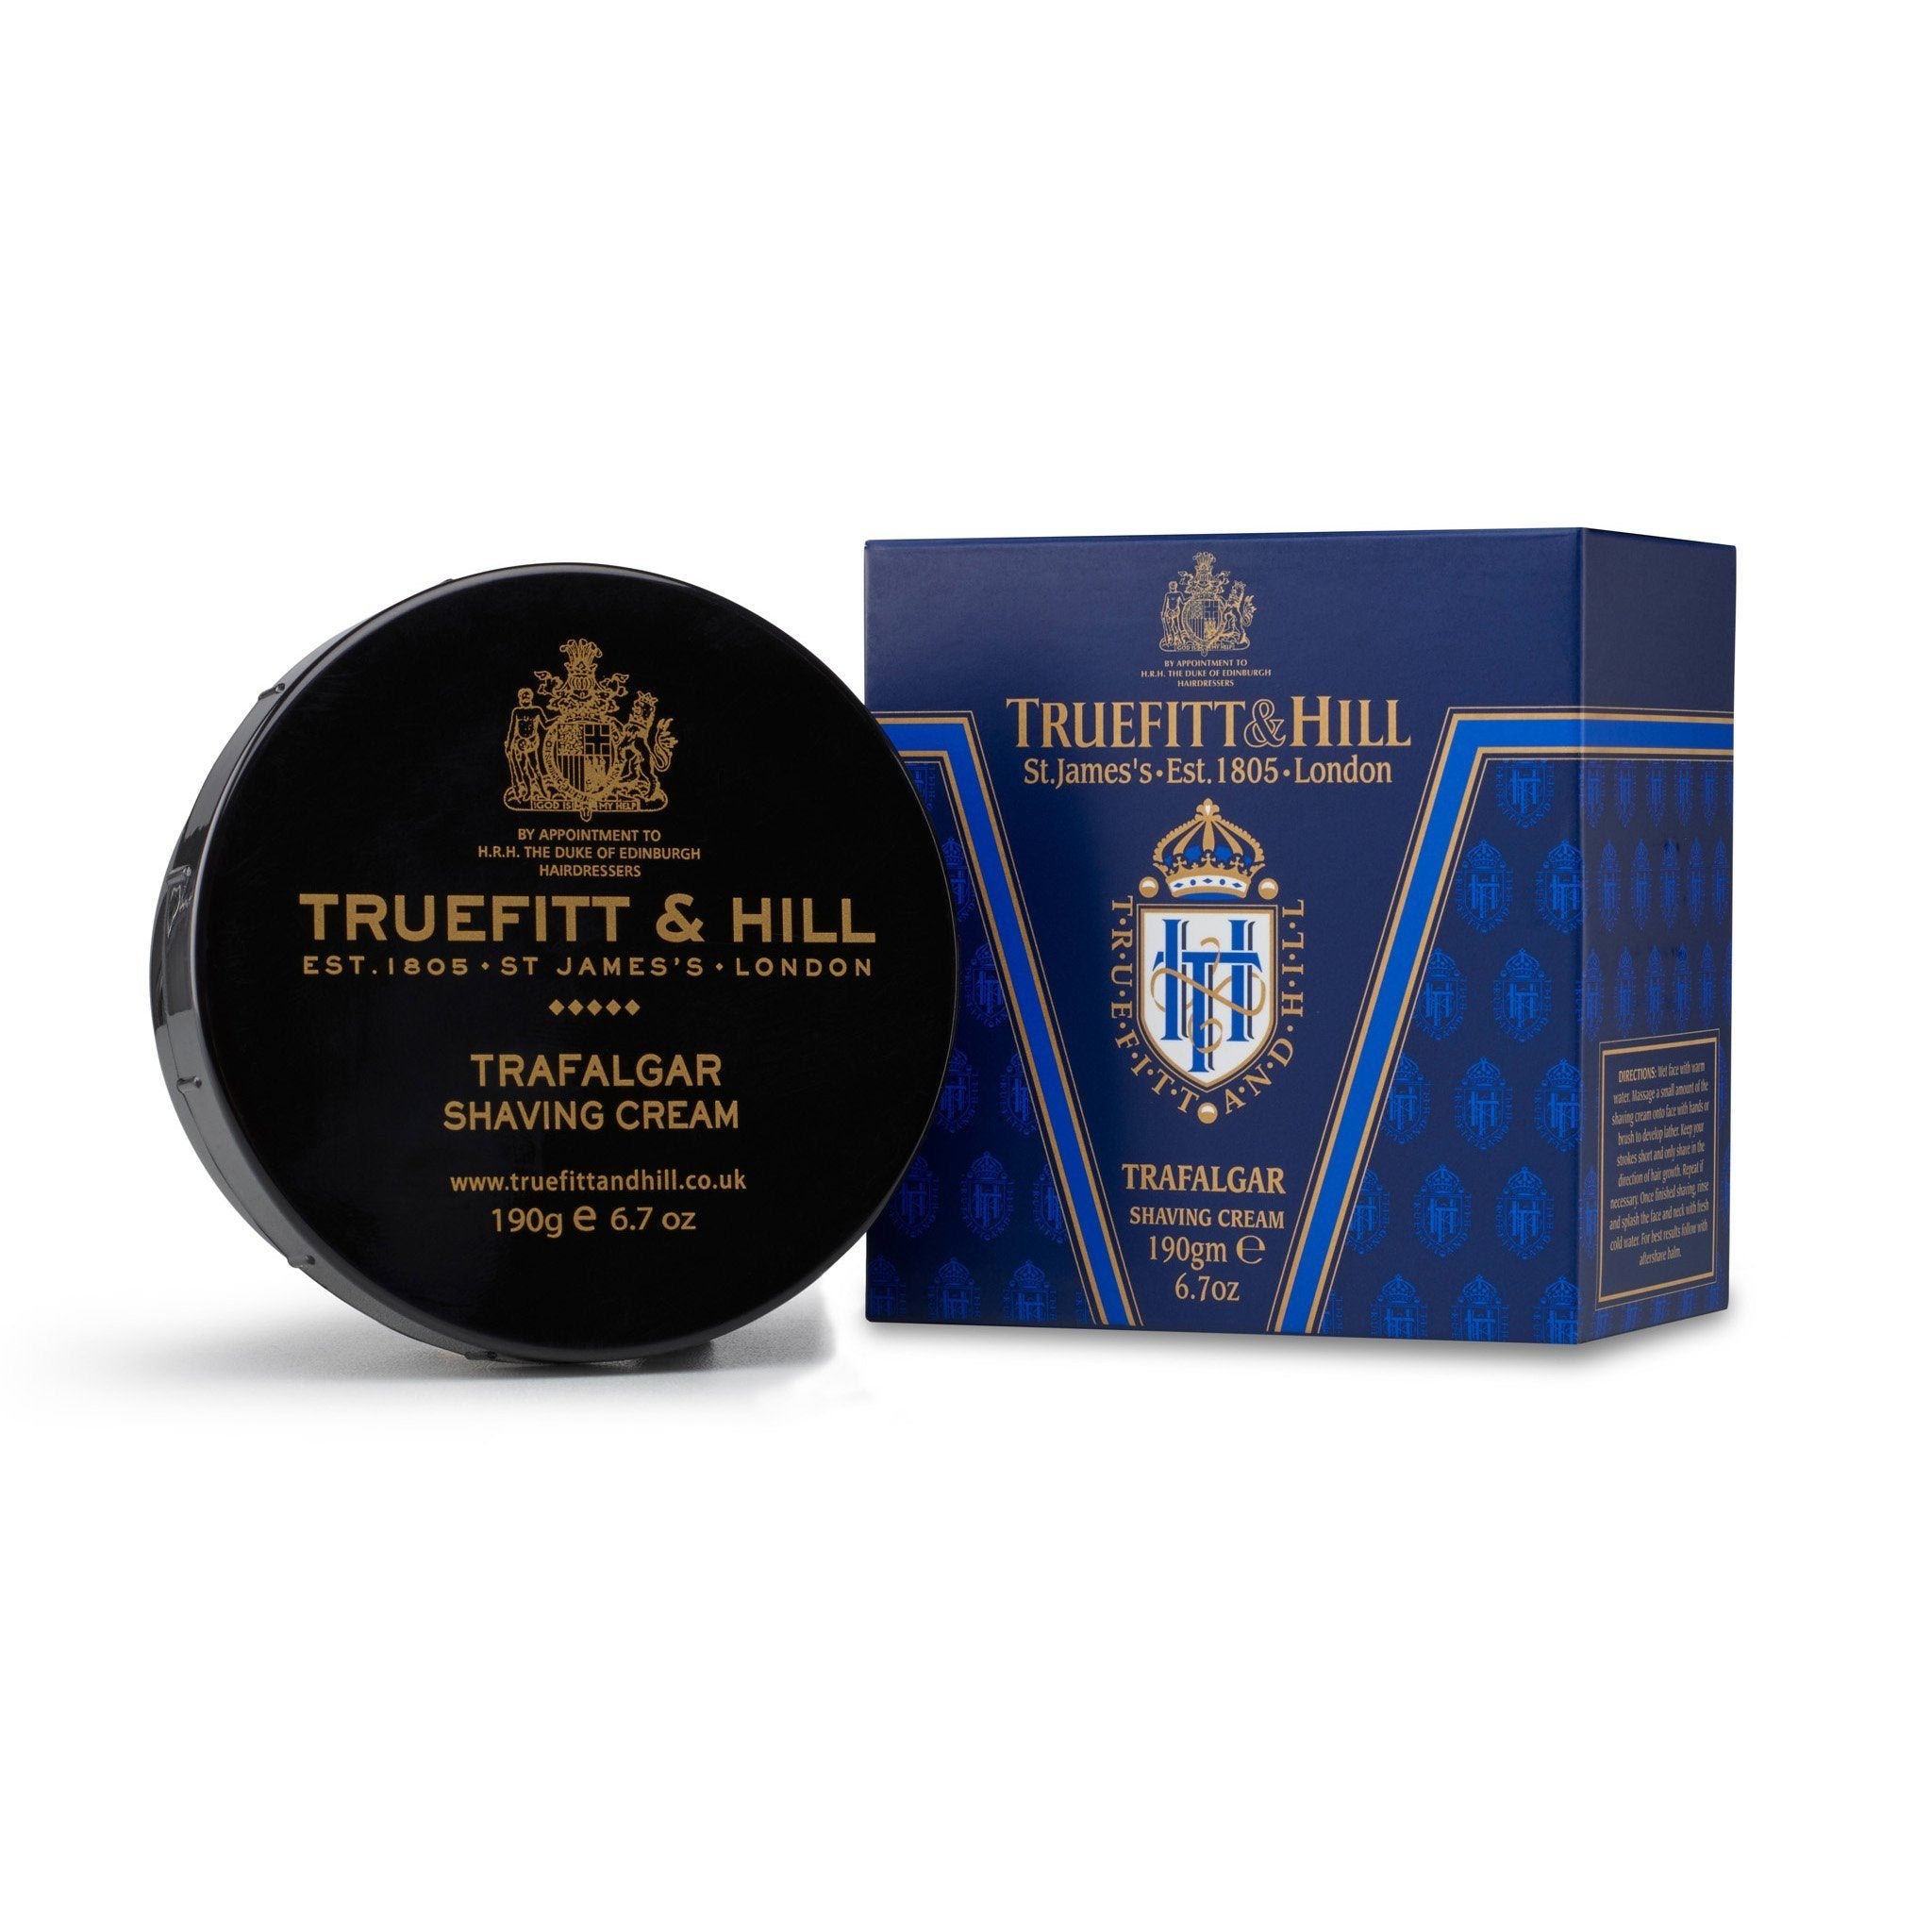 Truefitt & Hill barberkrem i skål - Trafalgar